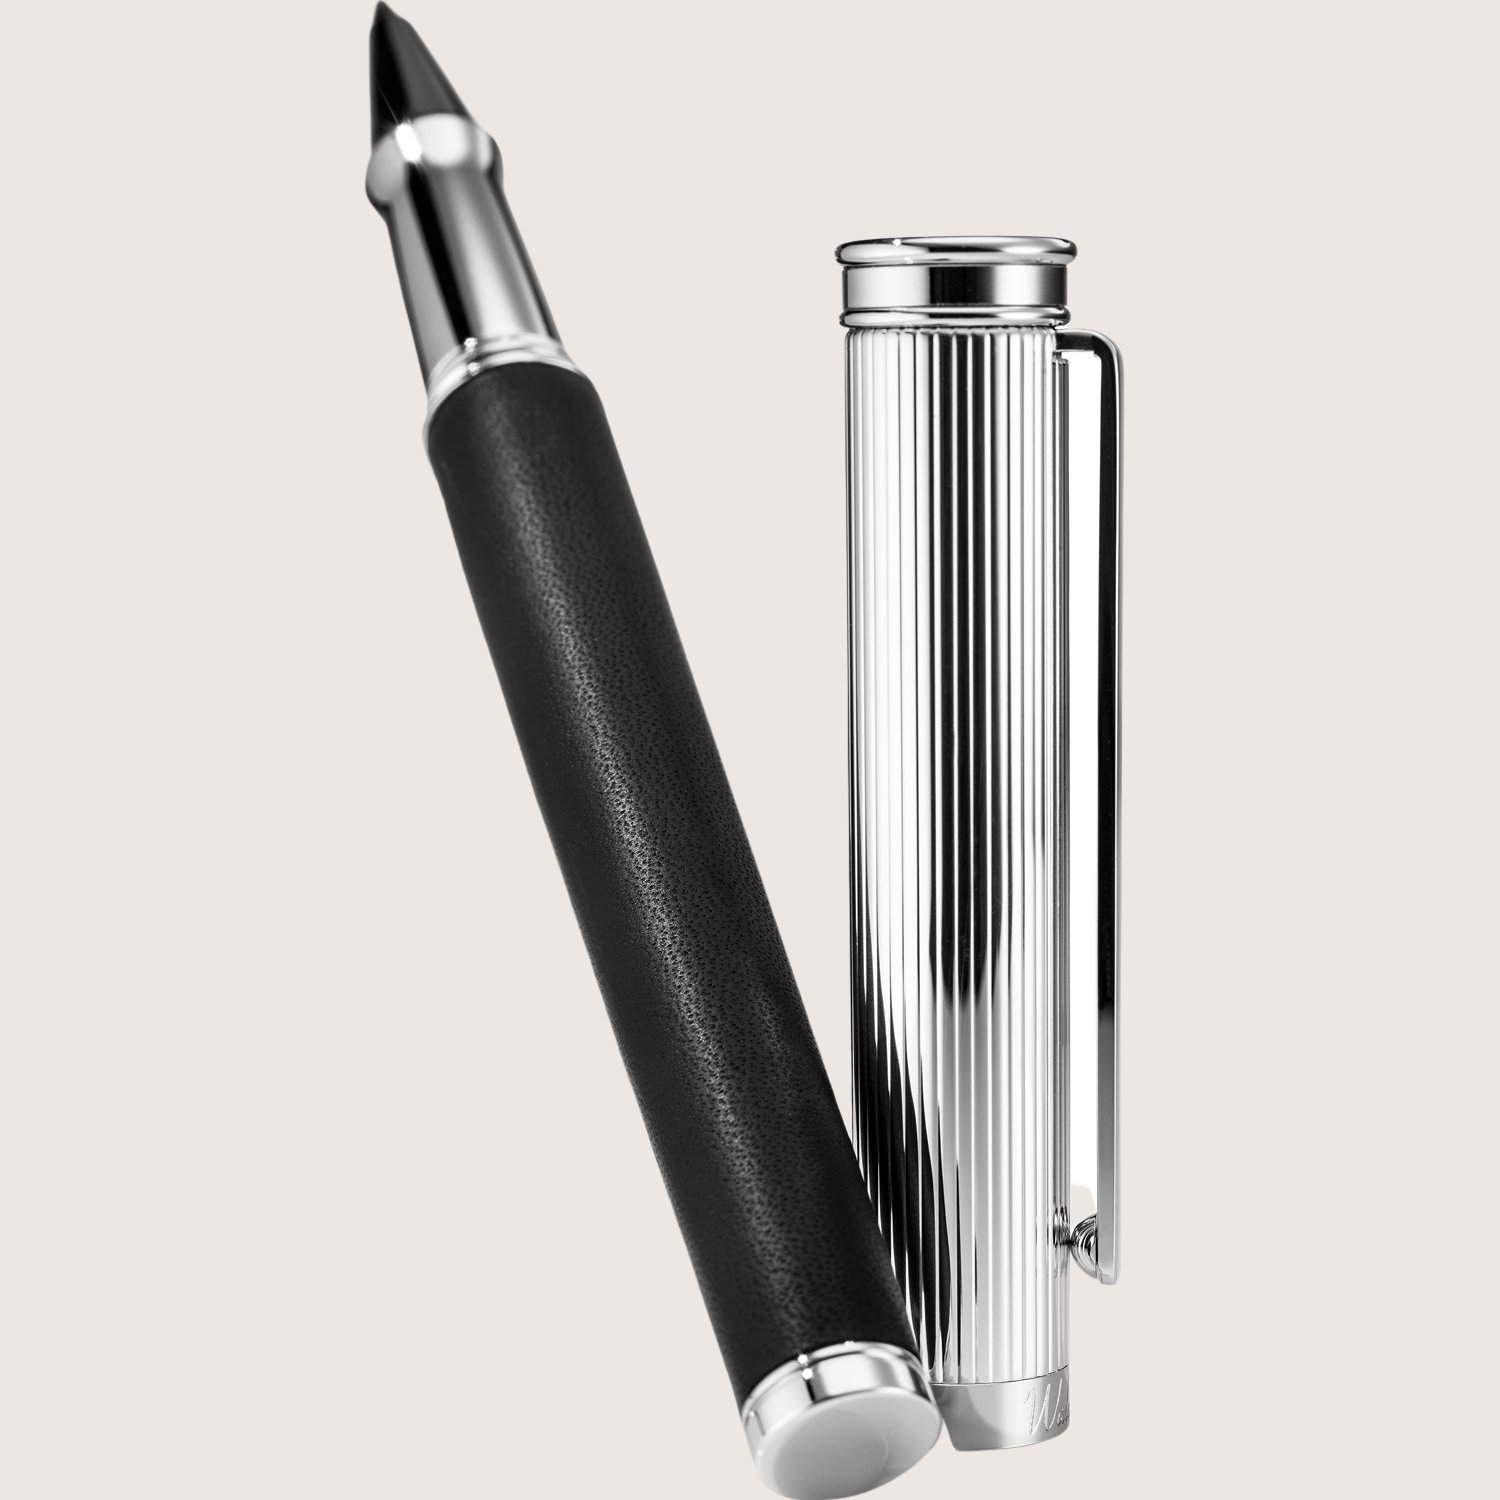 SOLON Füllfederhalter mit Edelstahlfeder F Silber Linien-Design Nappaleder schwarz